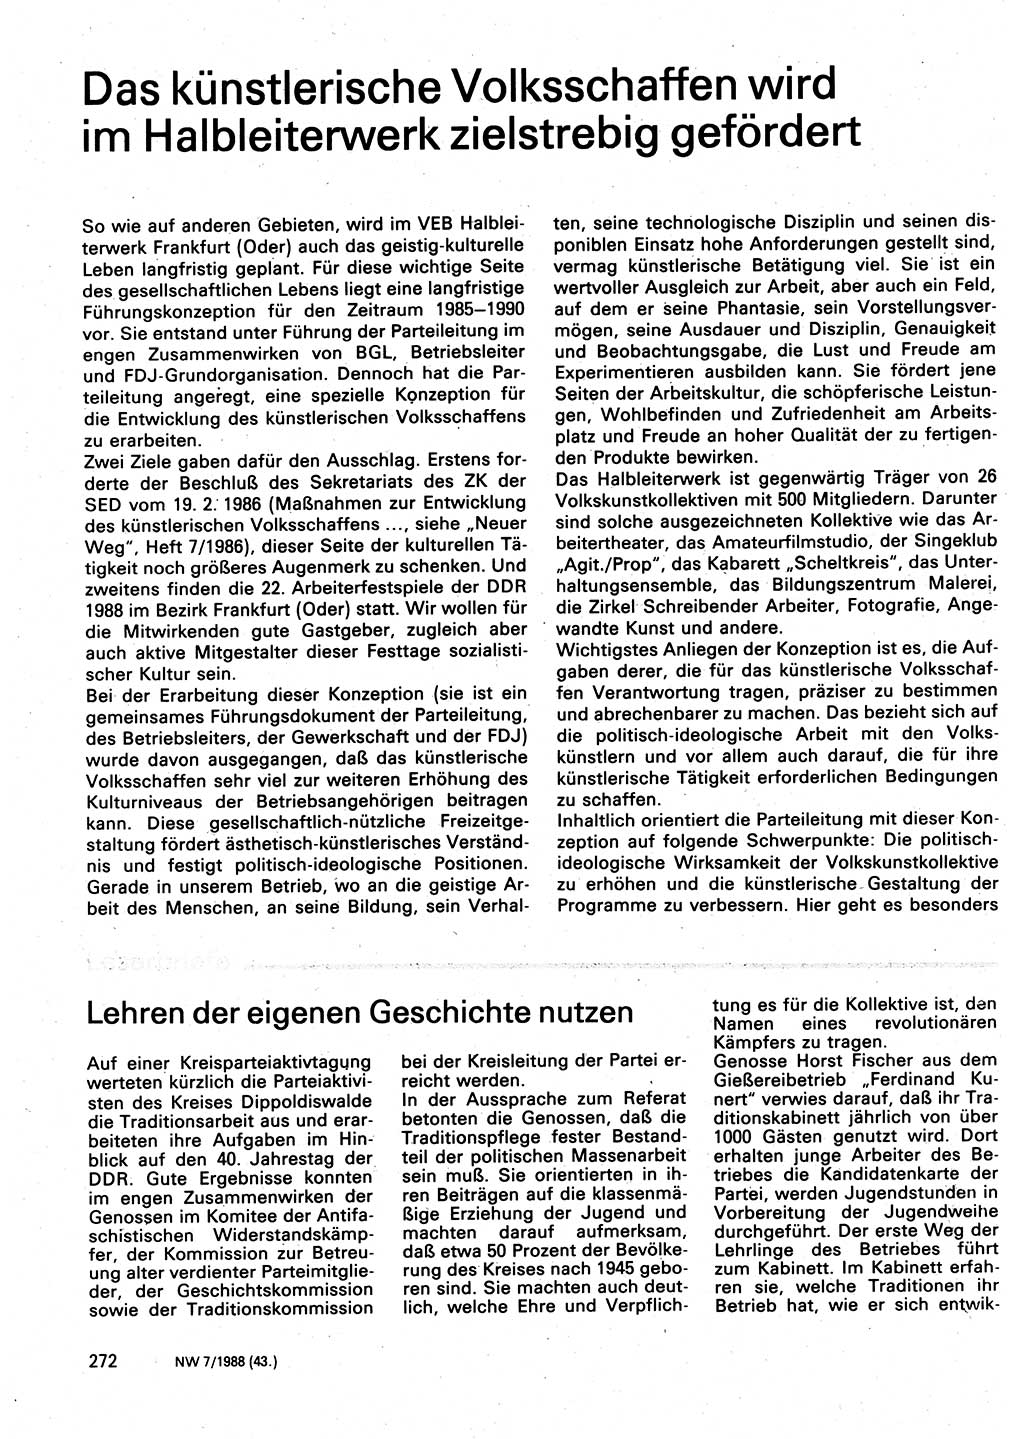 Neuer Weg (NW), Organ des Zentralkomitees (ZK) der SED (Sozialistische Einheitspartei Deutschlands) für Fragen des Parteilebens, 43. Jahrgang [Deutsche Demokratische Republik (DDR)] 1988, Seite 272 (NW ZK SED DDR 1988, S. 272)